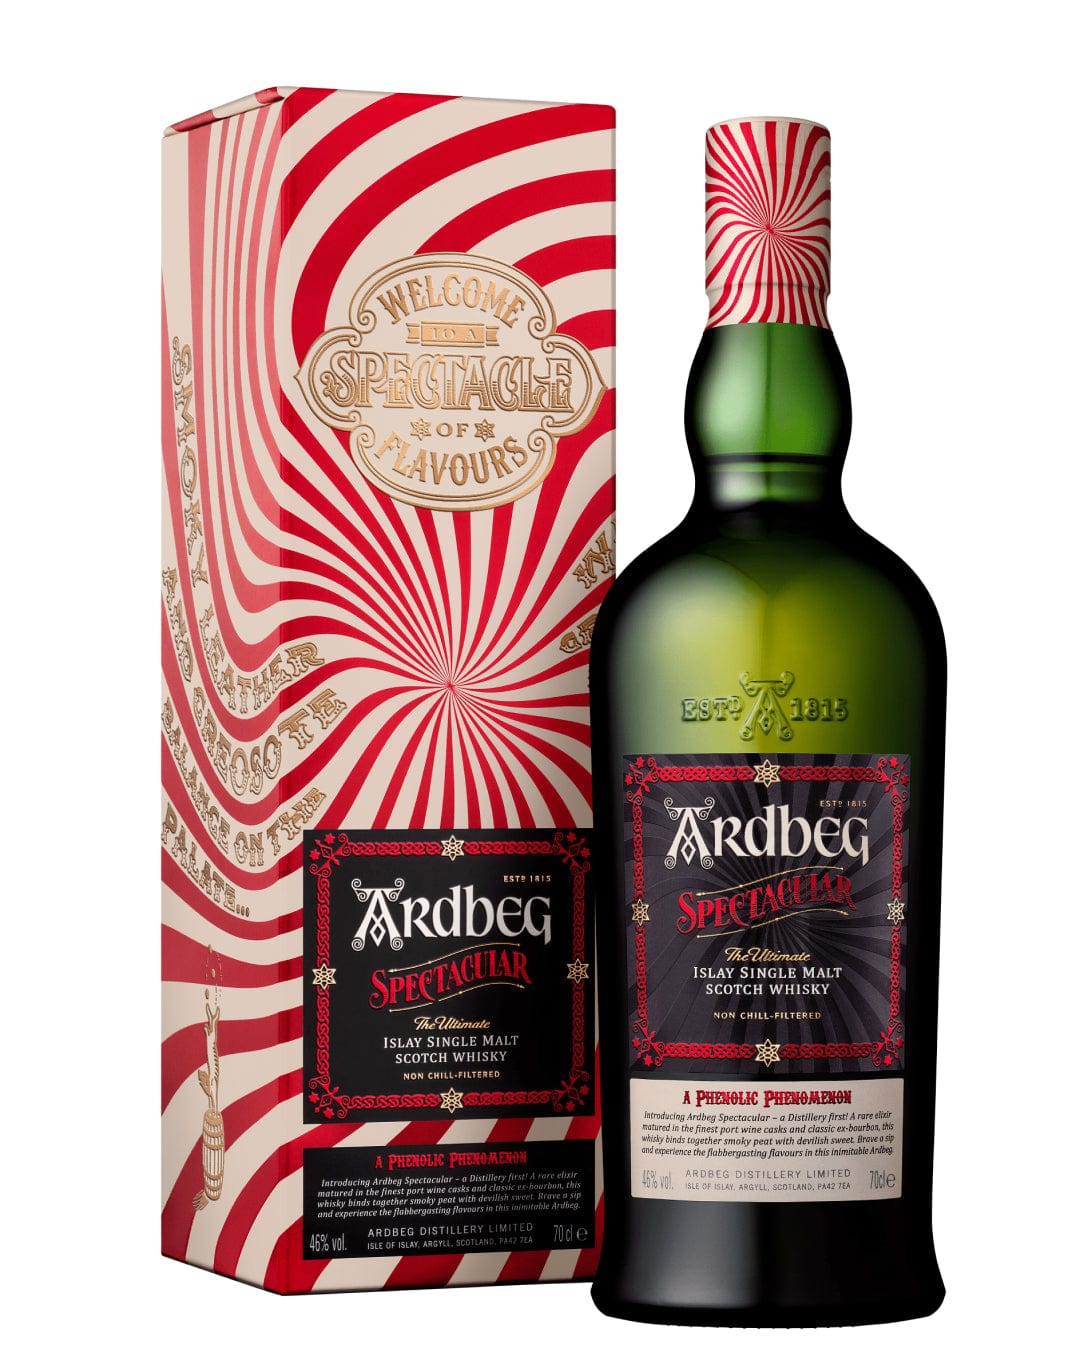 Ardbeg Spectacular Limited Edition Single Malt Scotch Whisky, 70 cl Whisky